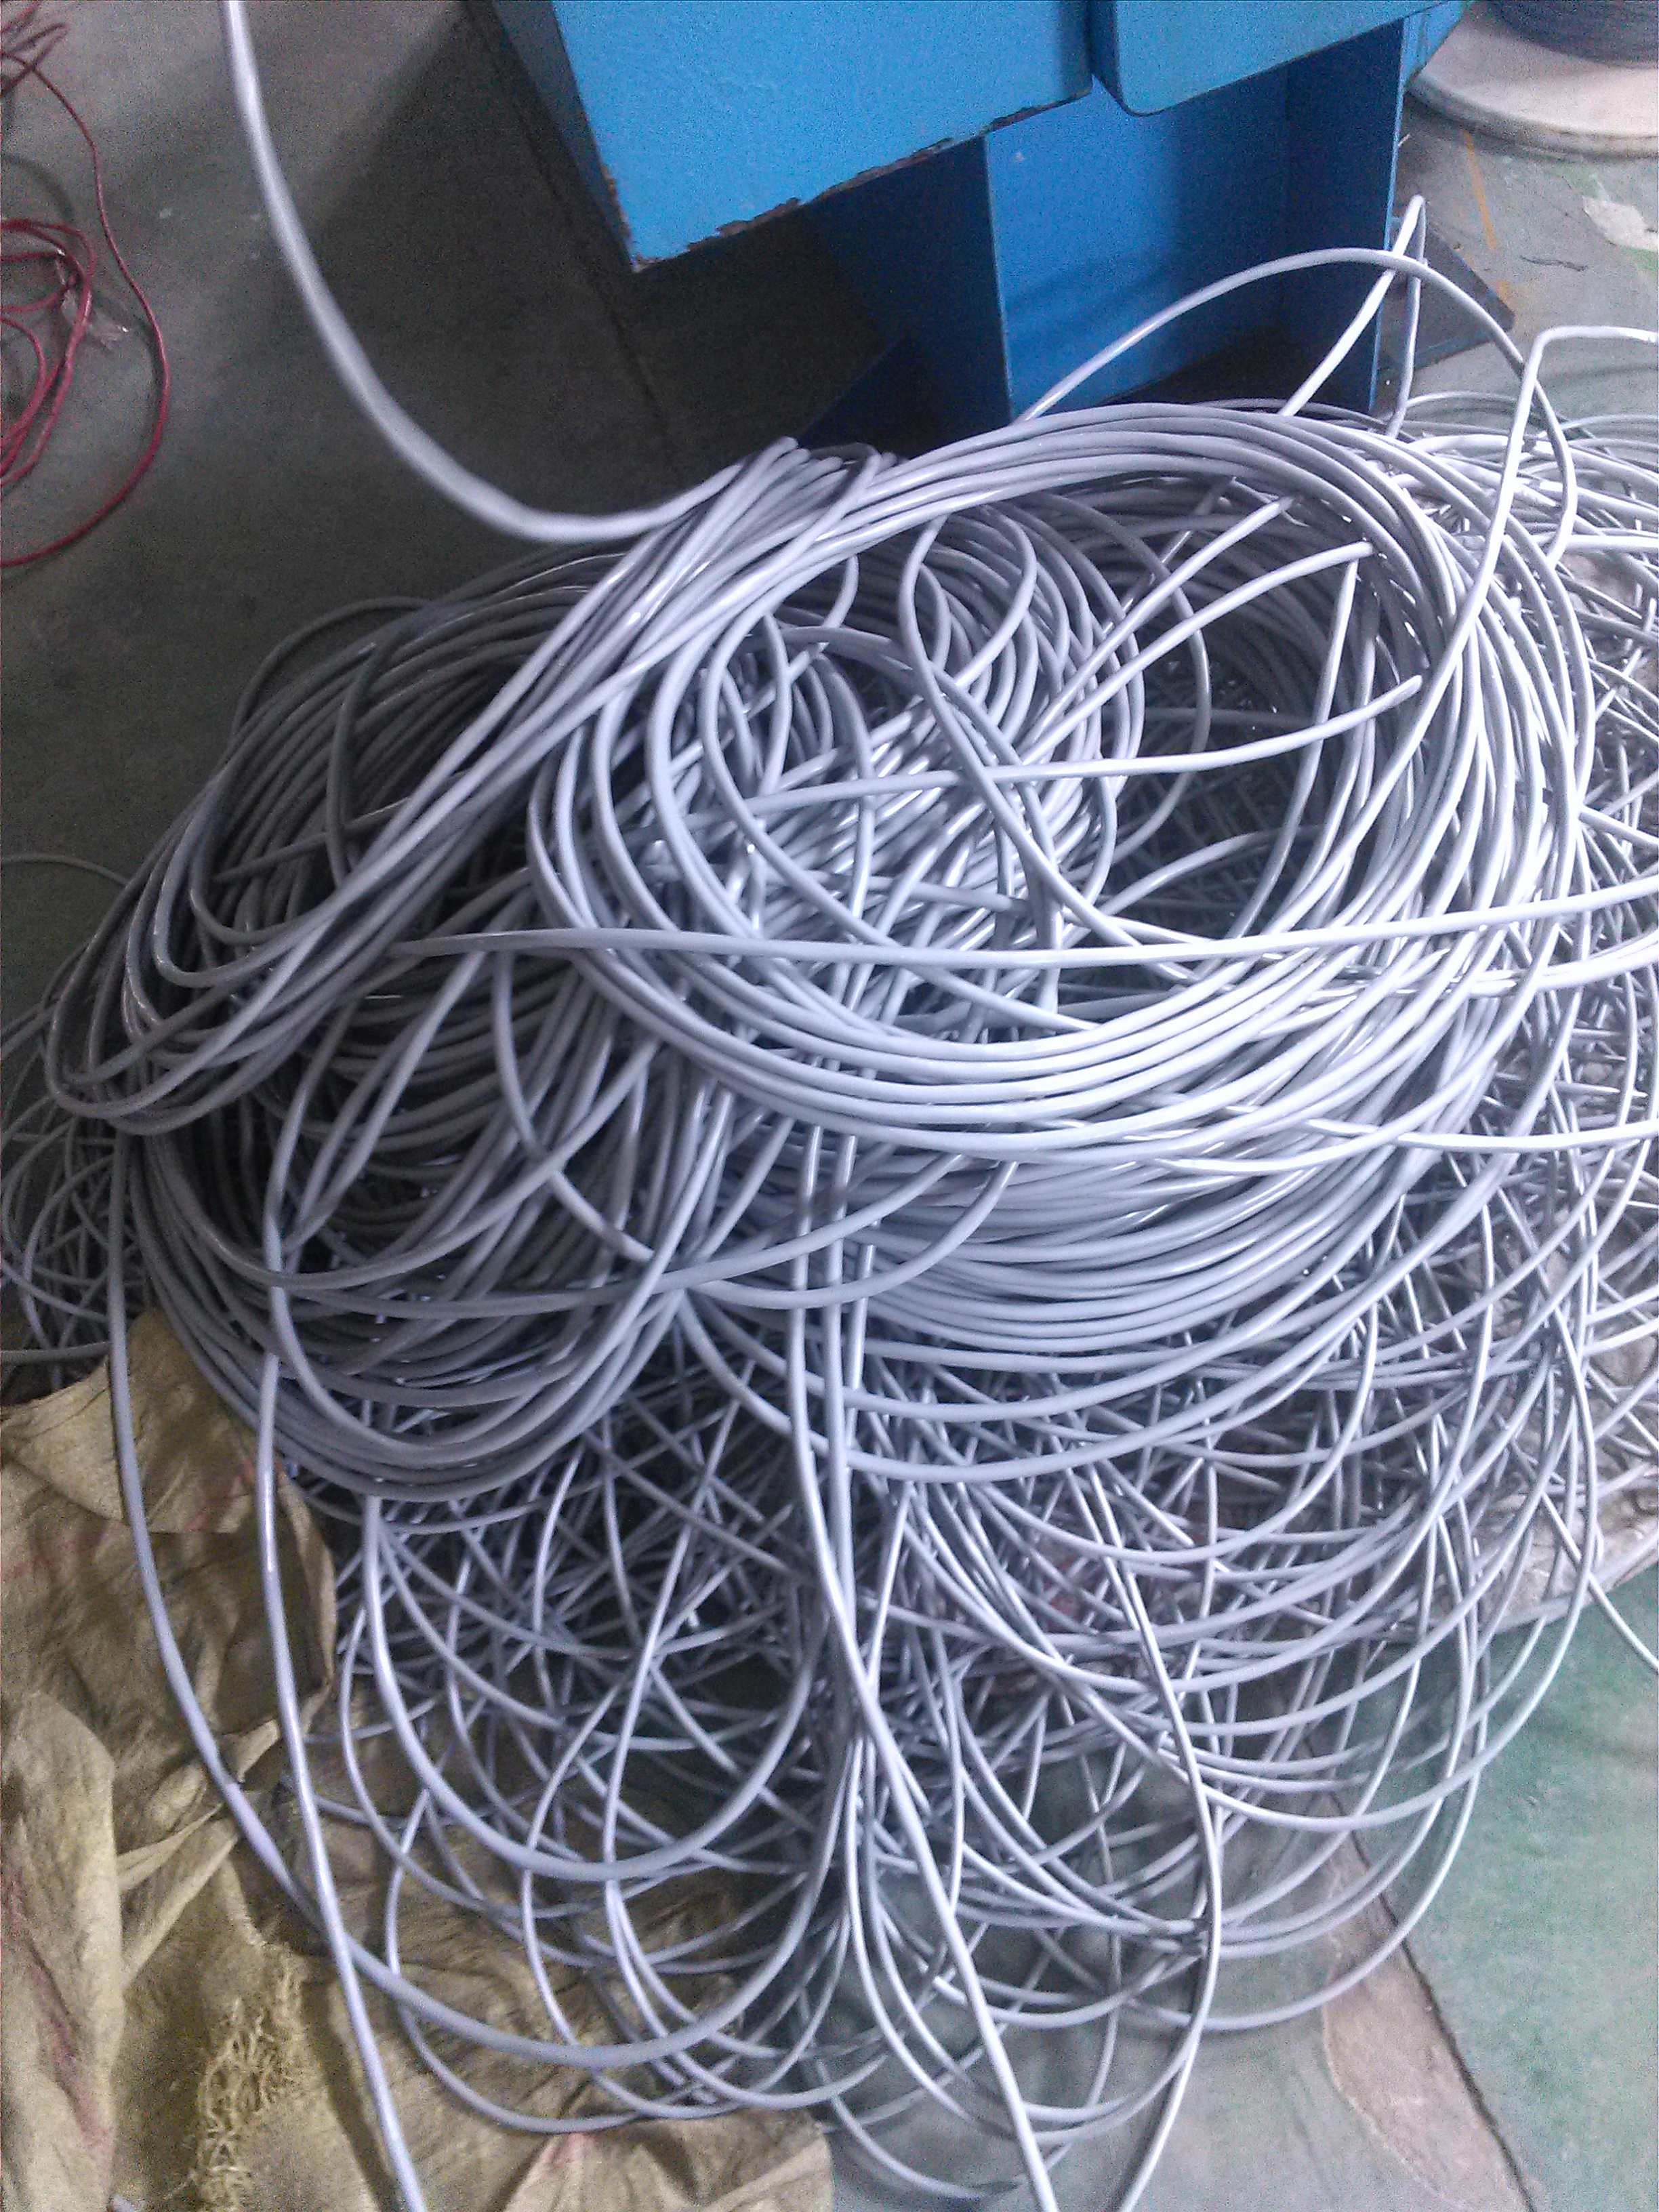 上海格采特种线缆有限公司上海格采电缆GCKM/FD-Y 上海格采拖电缆GCKM/FD-Y图片